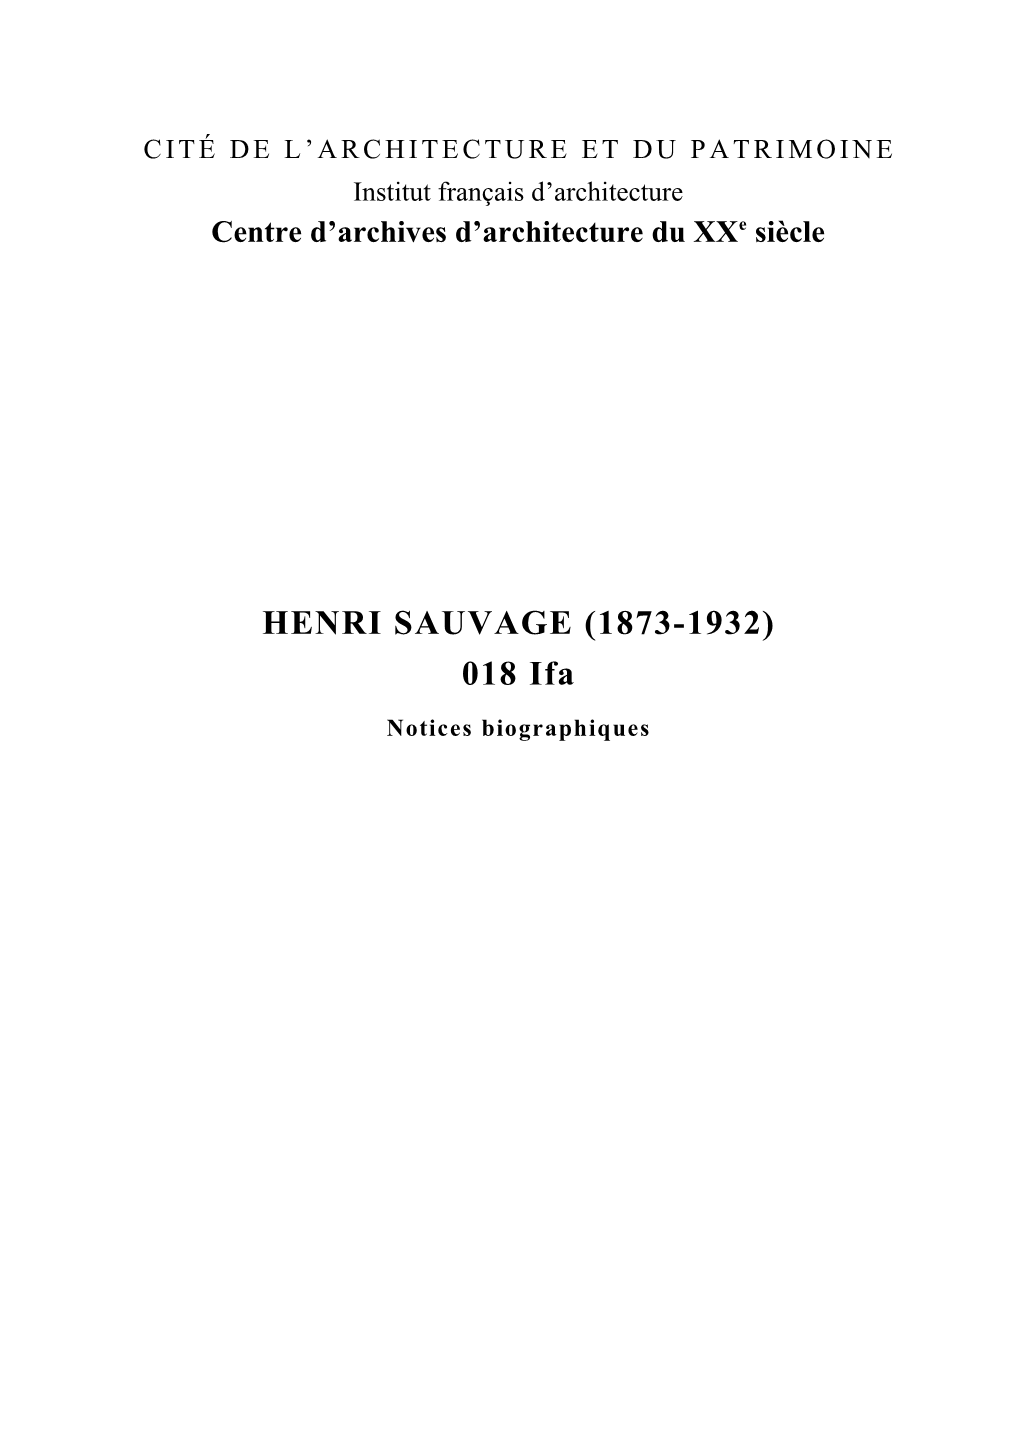 HENRI SAUVAGE (1873-1932) 018 Ifa